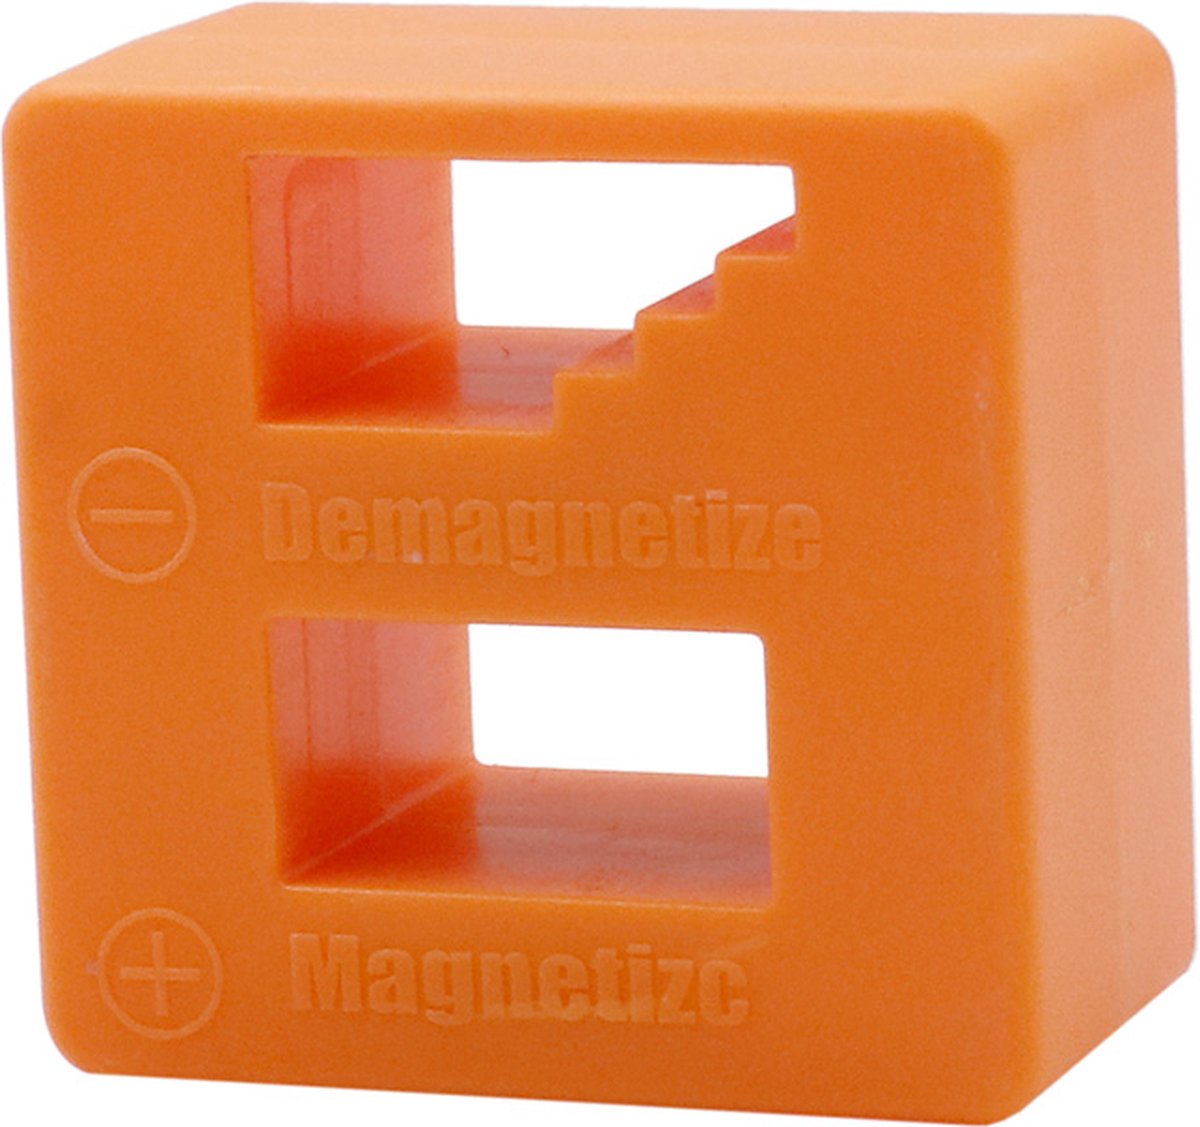 Magnetizer en Demagnetizer Blok Oranje